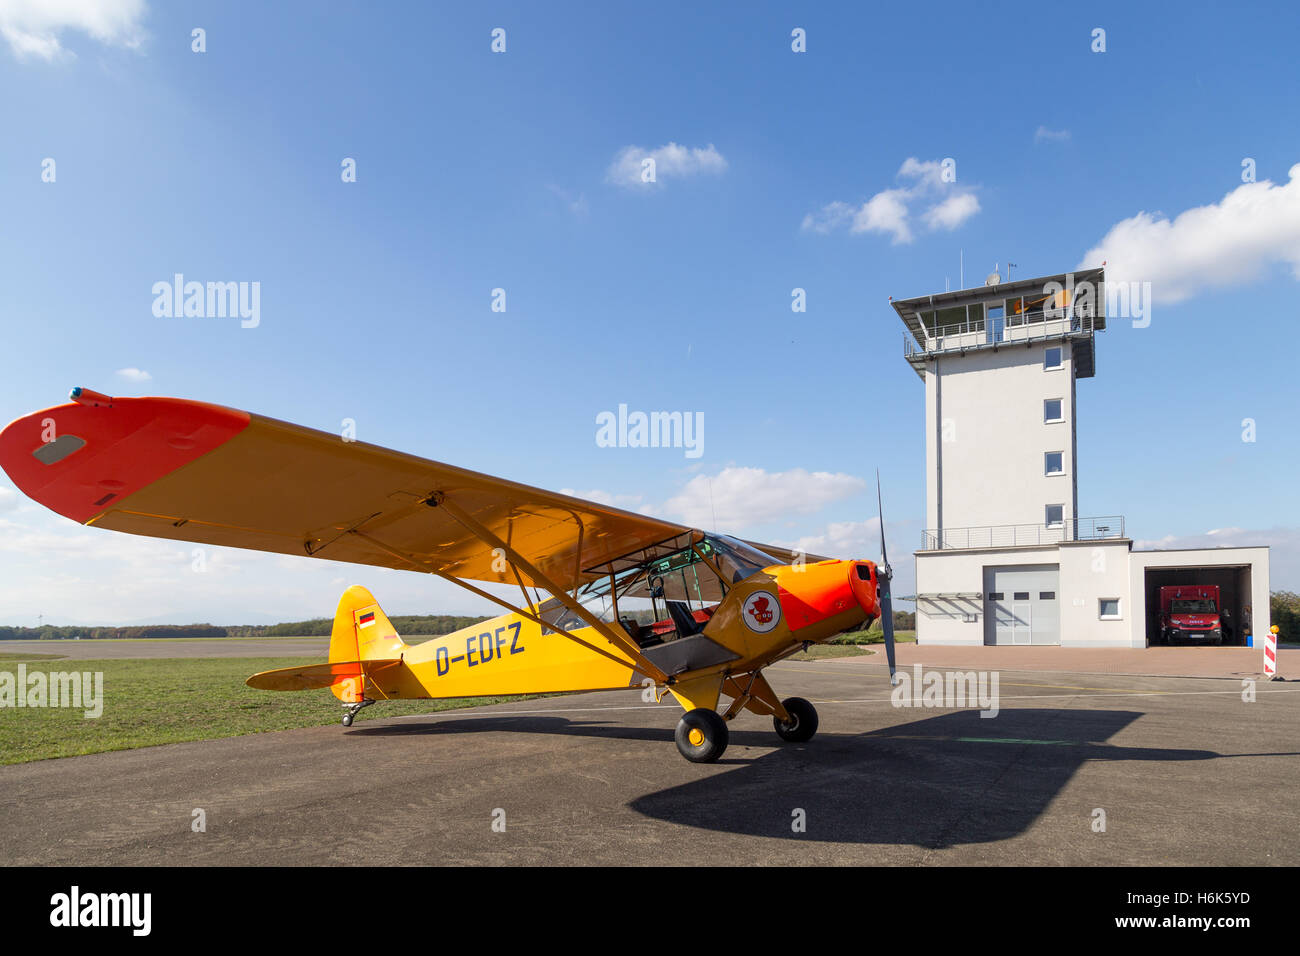 Bremgarten, Deutschland - 22. Oktober 2016: Eine klassische gelbe Piper Cub Flugzeuge parken am Flughafen Stockfoto